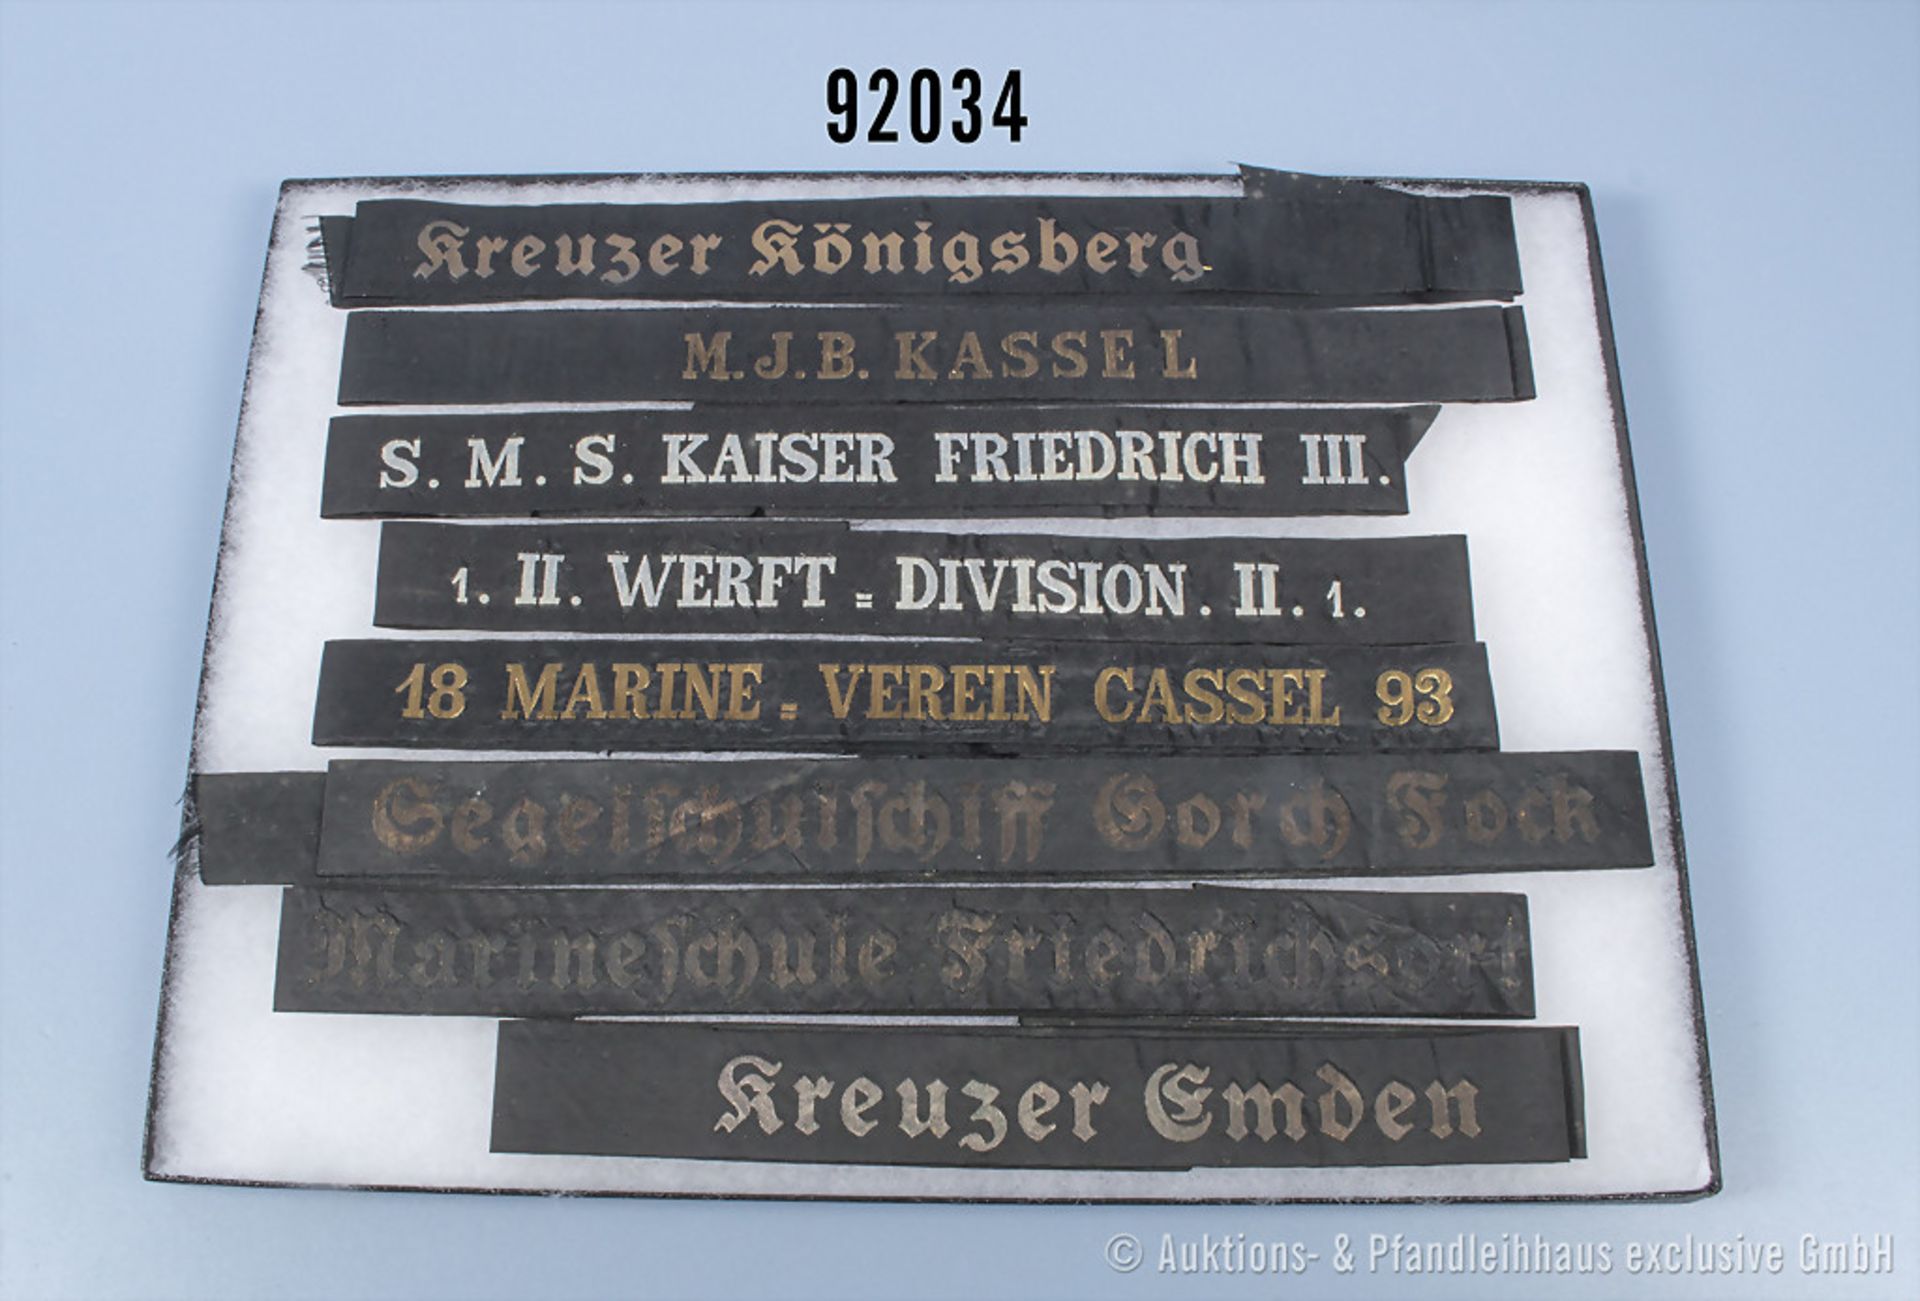 Konv. 8 Mützenbänder Kaiserliche Marine und Kriegsmarine, "Kreuzer Königsberg", "M.J.B. ...